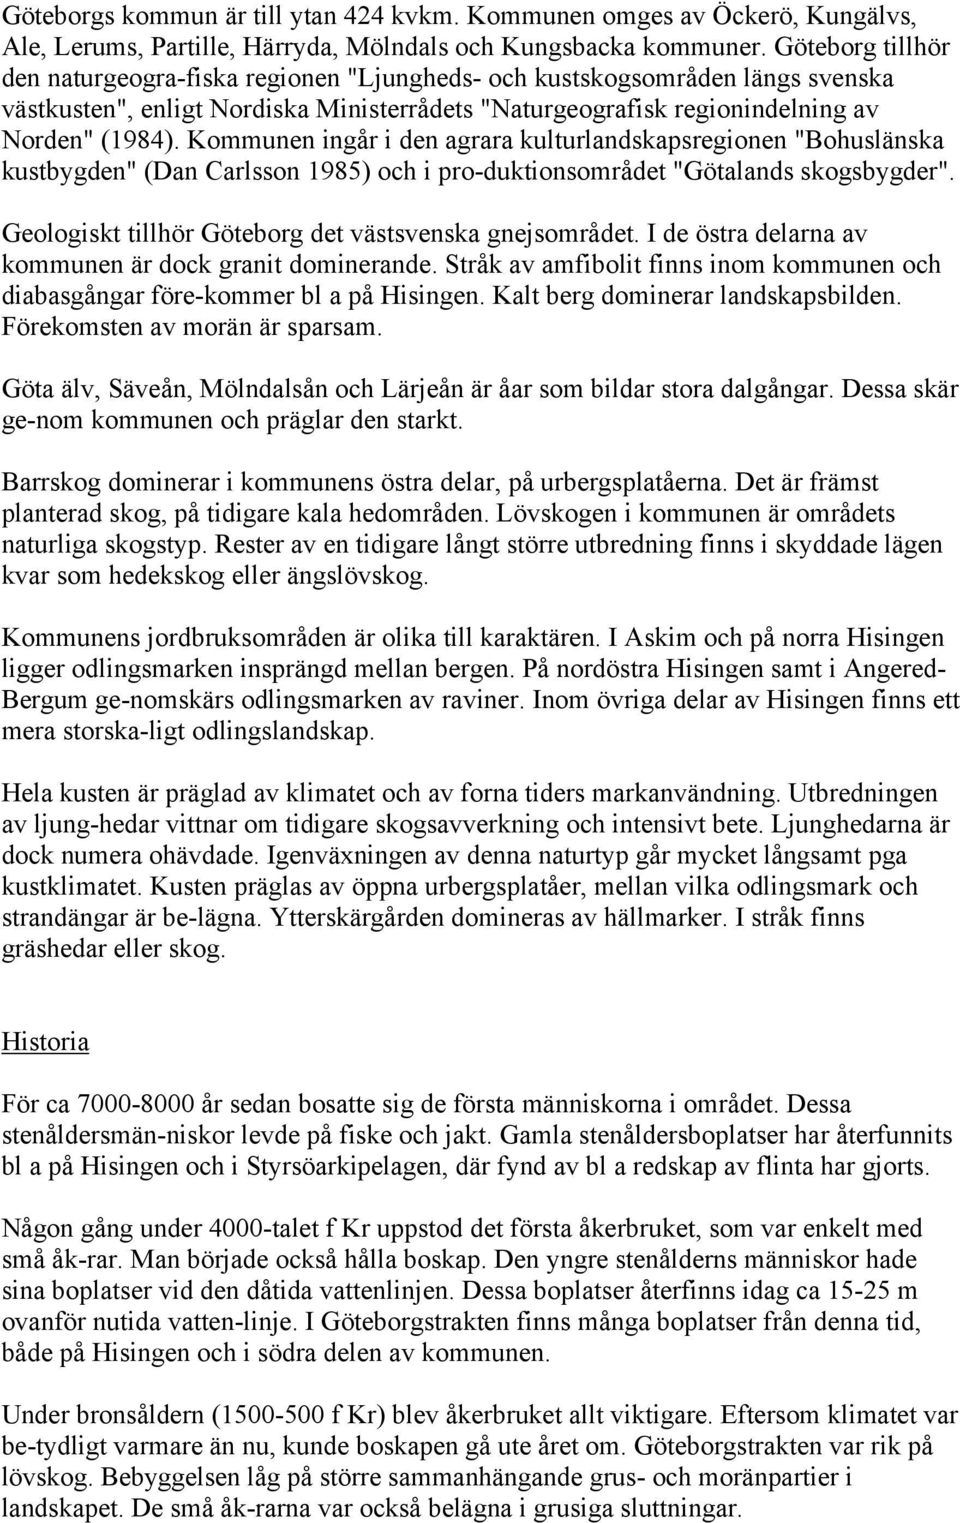 Kommunen ingår i den agrara kulturlandskapsregionen "Bohuslänska kustbygden" (Dan Carlsson 1985) och i pro-duktionsområdet "Götalands skogsbygder".